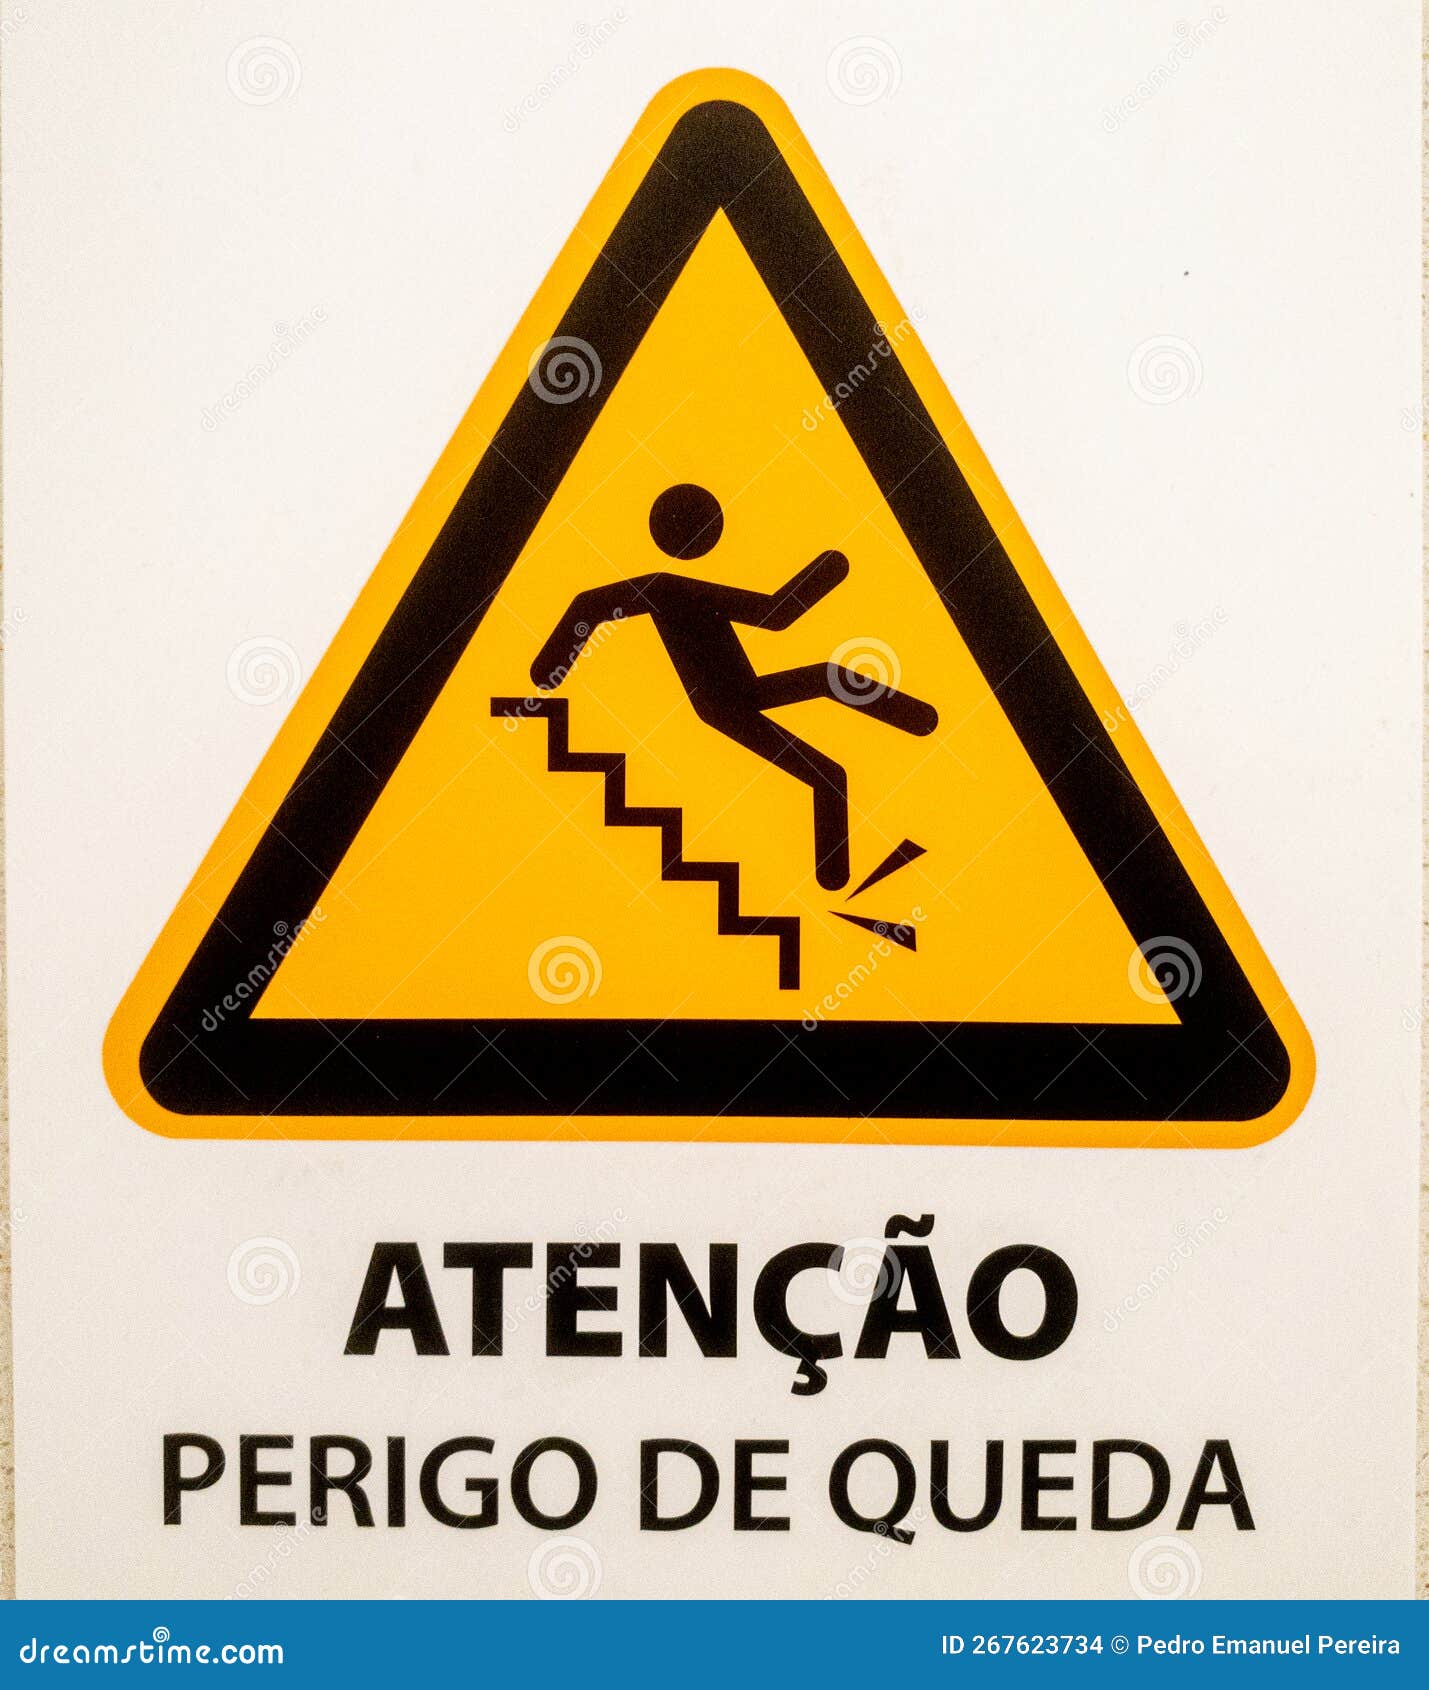 "atenÃ§Ã£o, perigo de queda" sign.  triangular  with person falling from steps on yellow background.